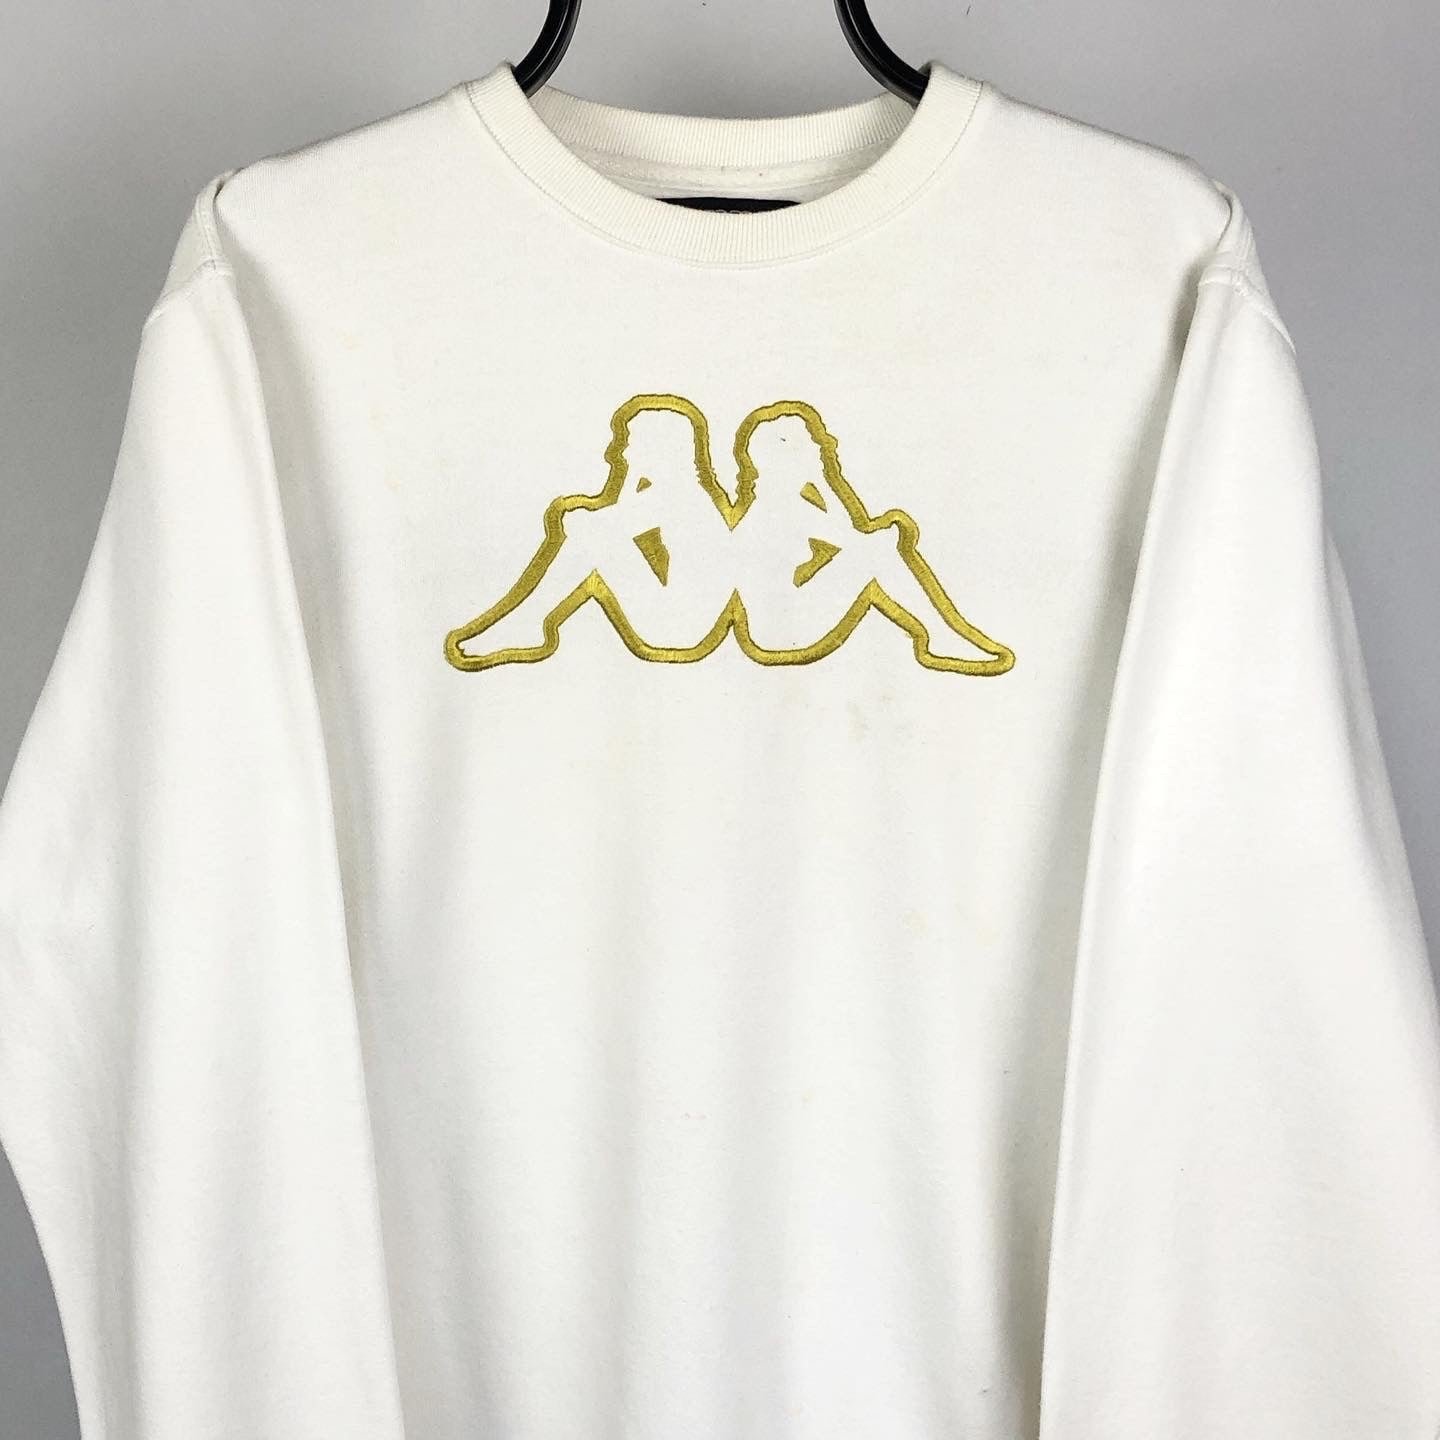 Vintage Kappa Sweatshirt in White & Gold - Men’s Medium/Women’s Large